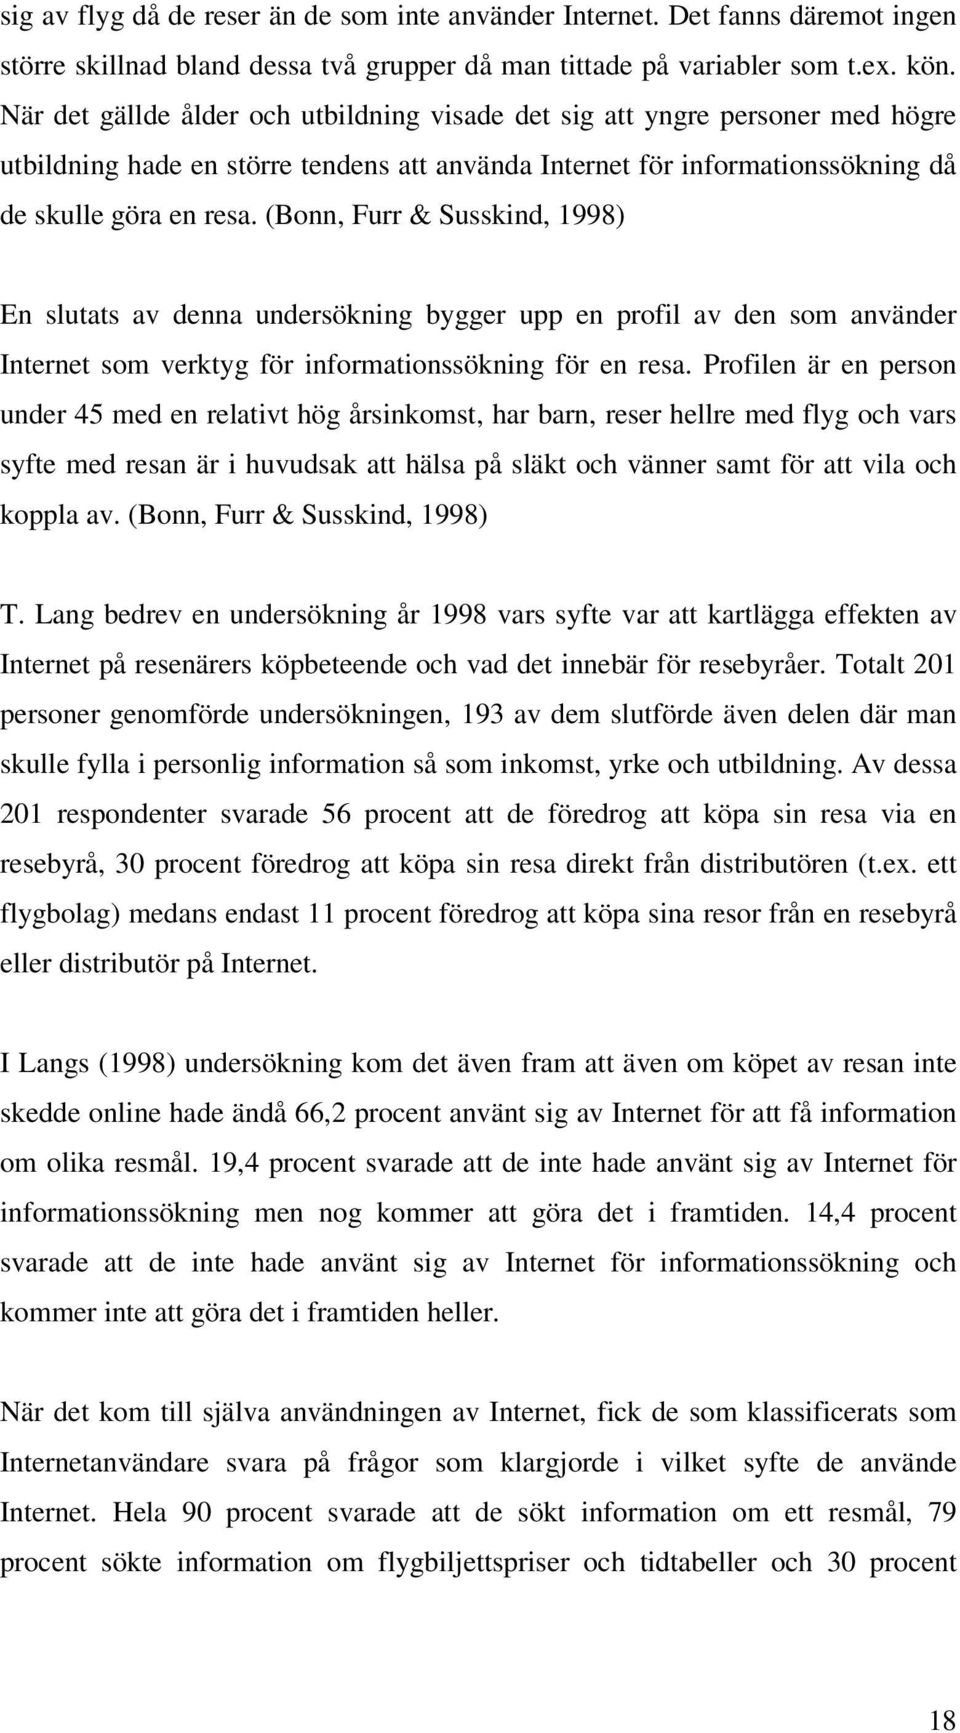 (Bonn, Furr & Susskind, 1998) En slutats av denna undersökning bygger upp en profil av den som använder Internet som verktyg för informationssökning för en resa.